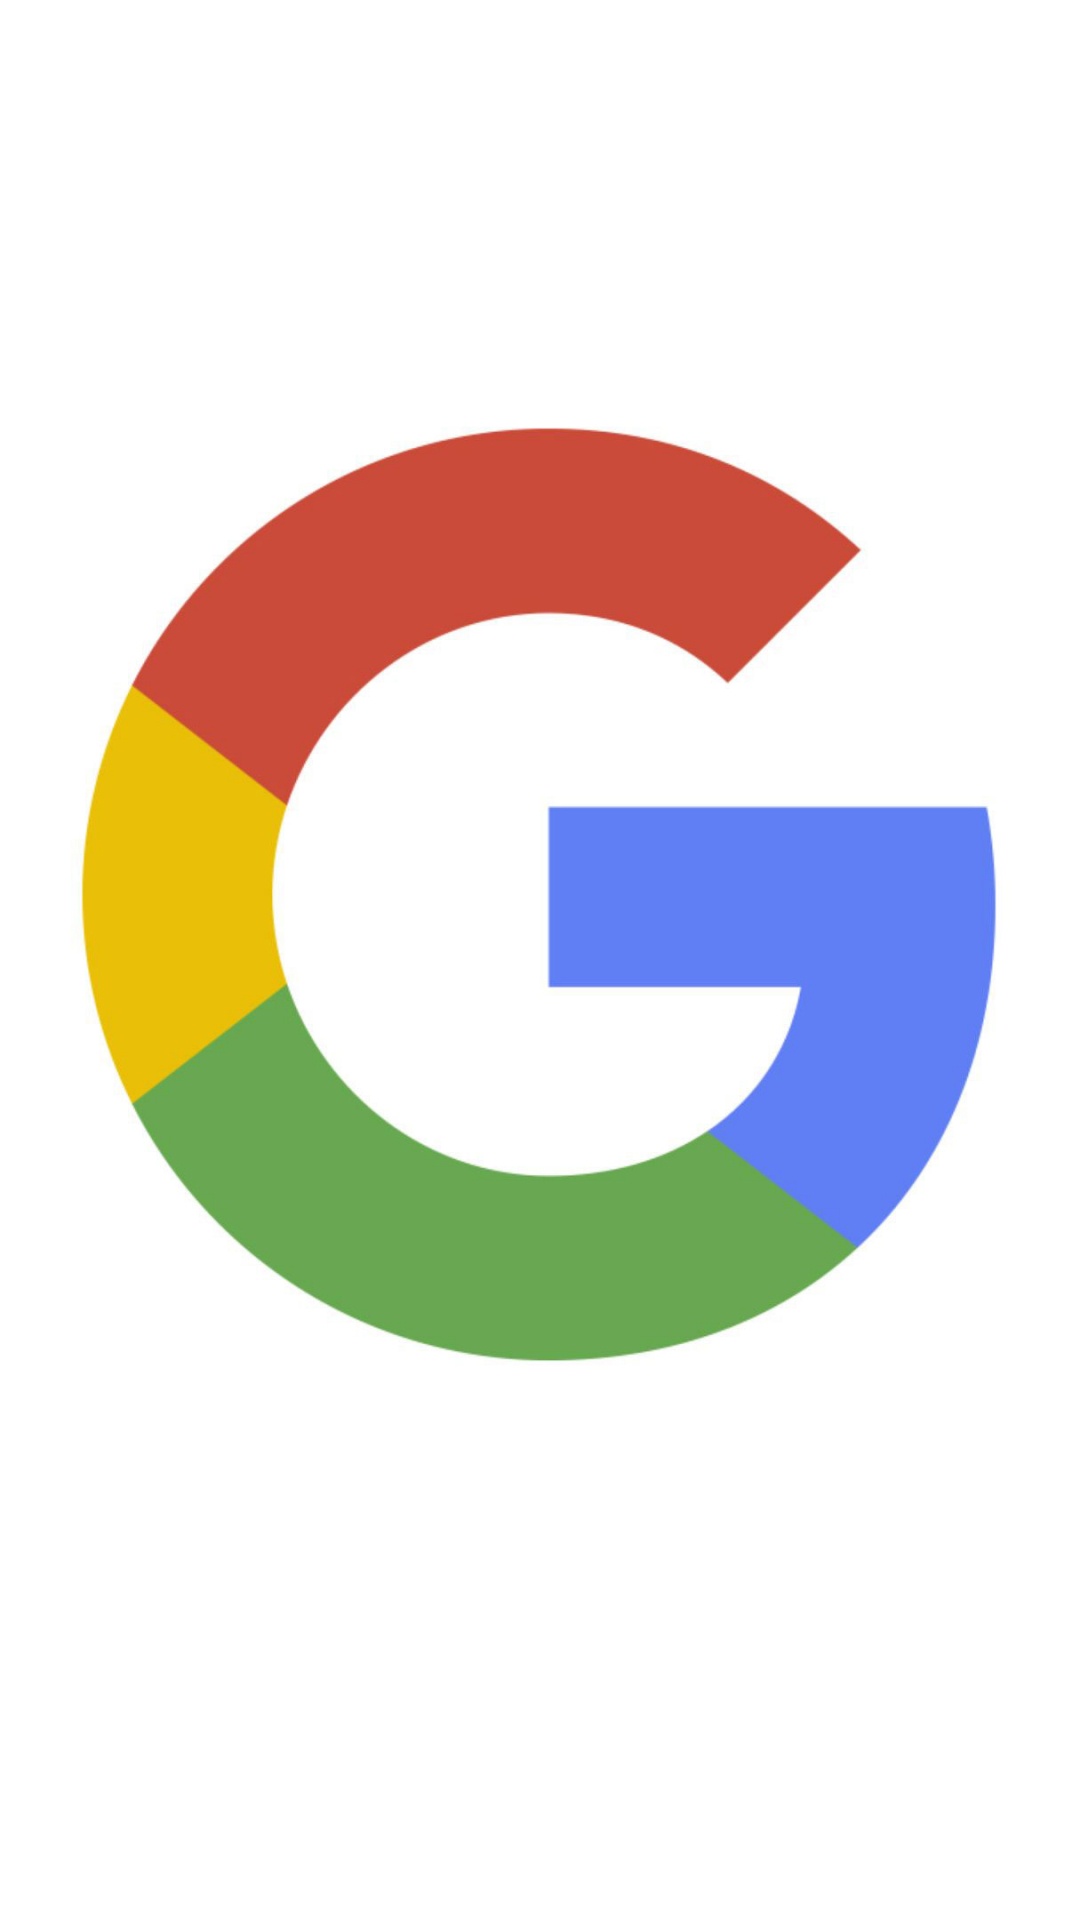 谷歌, 谷歌的标志, 文本, 品牌, 圆圈 壁纸 1080x1920 允许